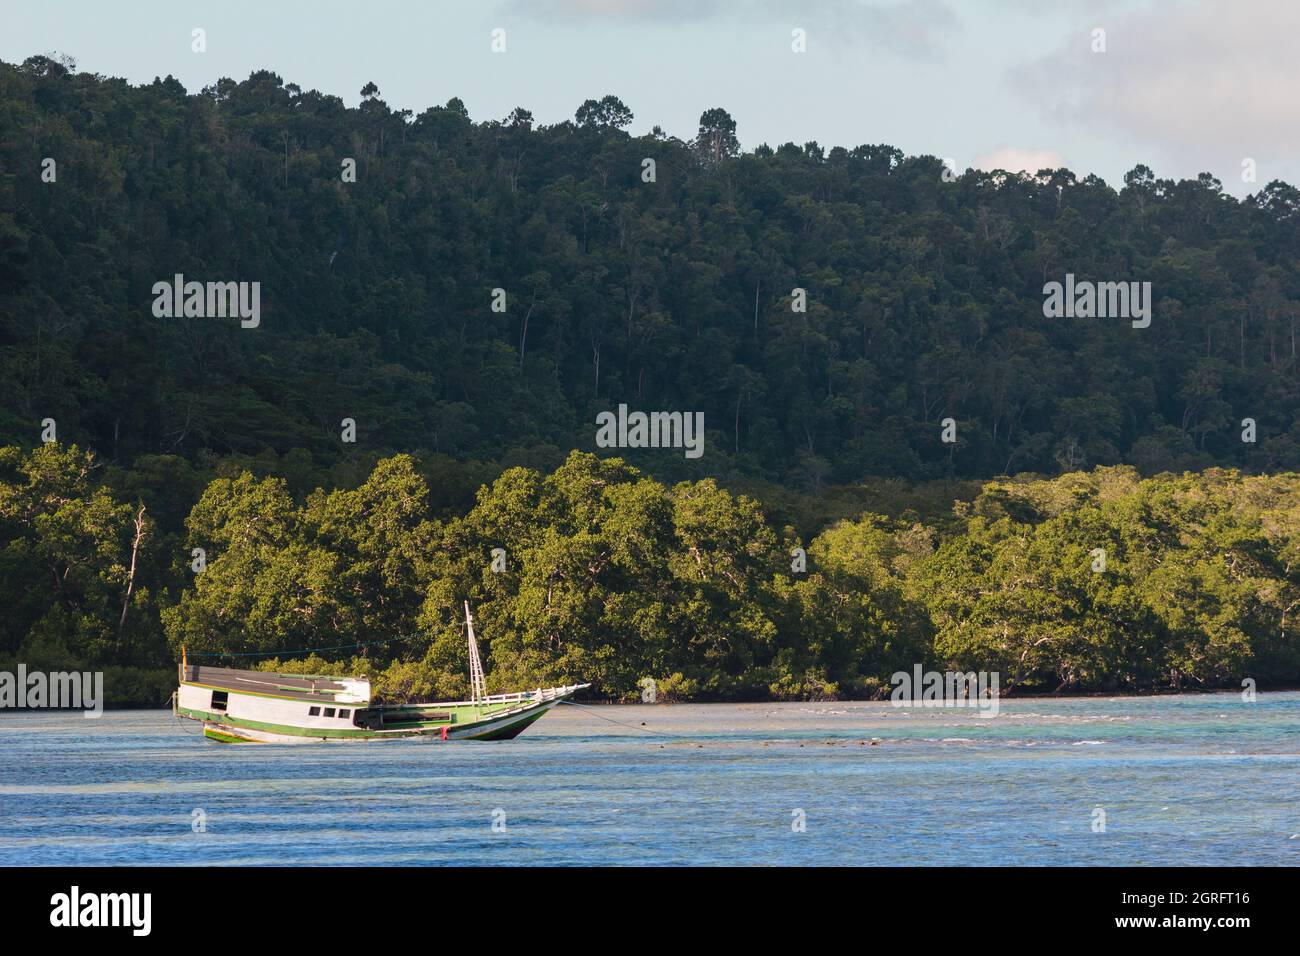 Indonésie, Papouasie, île de Biak, plage de Bosnik, bateau de pêche pêché devant une côte bordée de jungle Banque D'Images